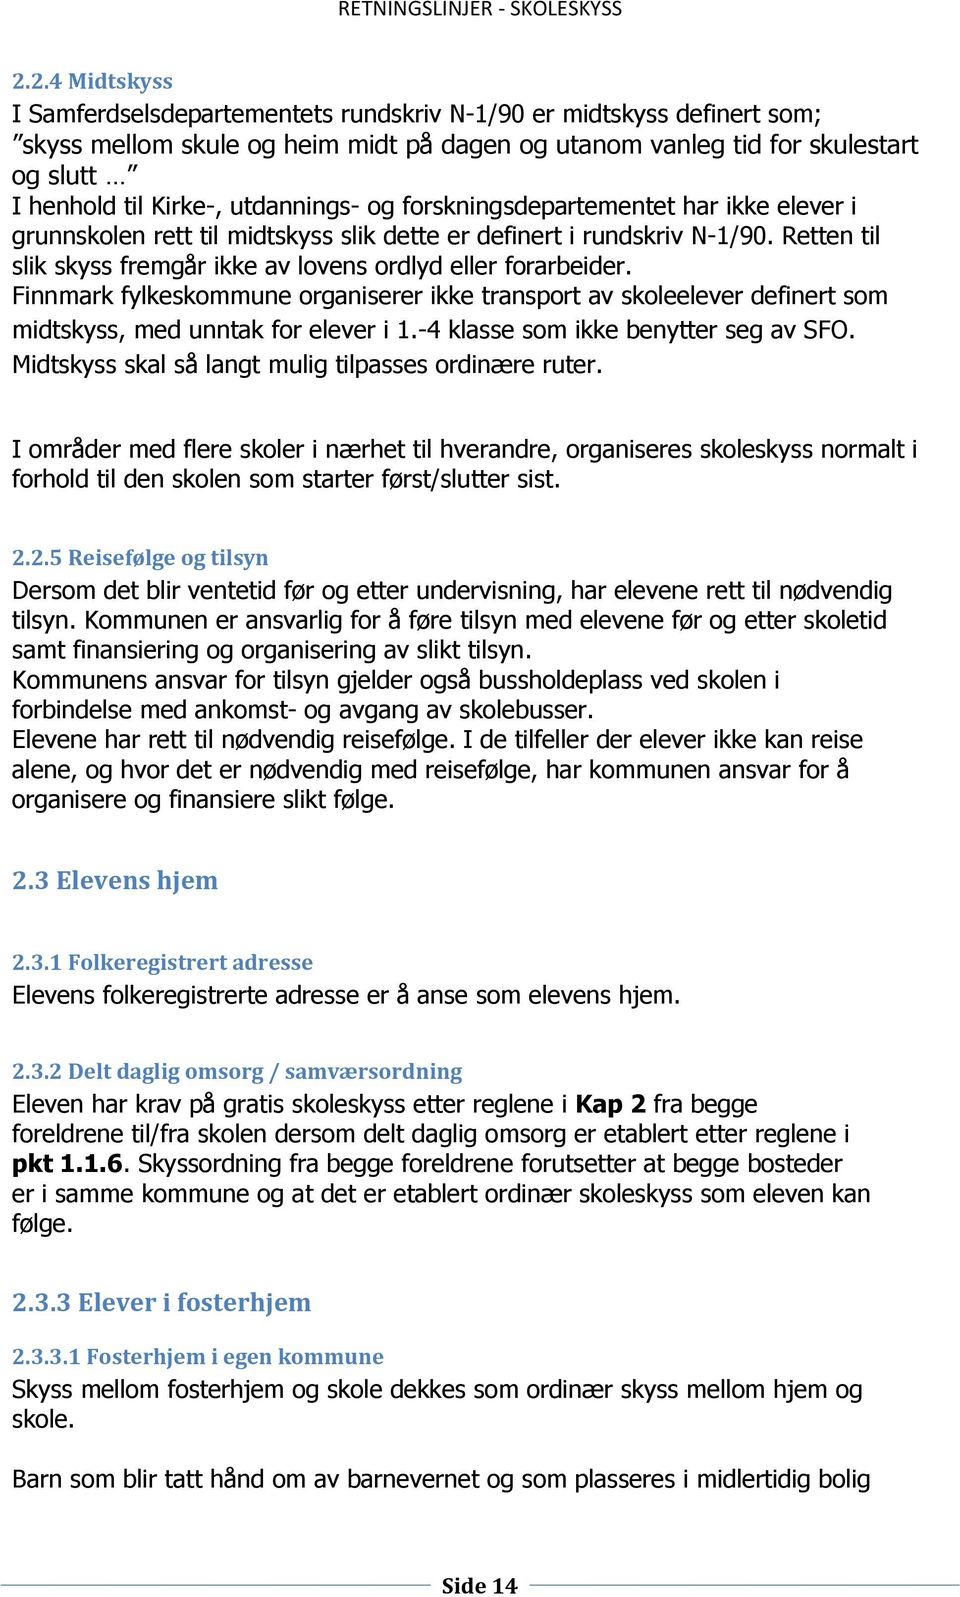 Retten til slik skyss fremgår ikke av lovens ordlyd eller forarbeider. Finnmark fylkeskommune organiserer ikke transport av skoleelever definert som midtskyss, med unntak for elever i 1.